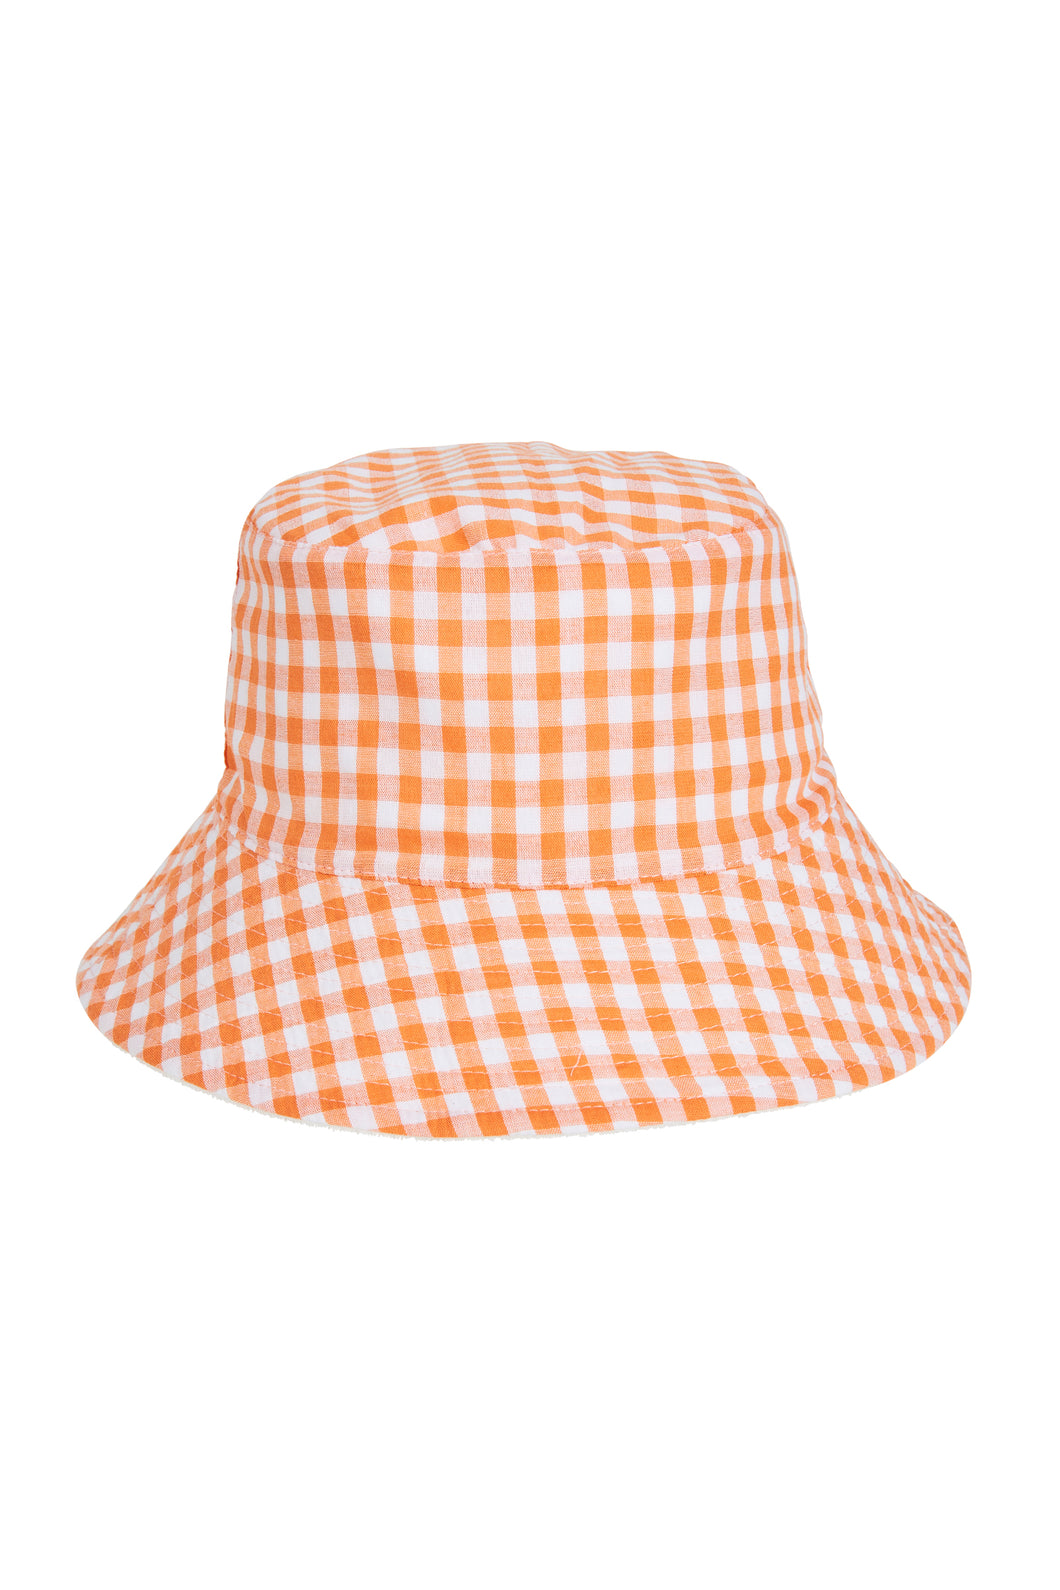 Maluku Bucket Hat - Ecru